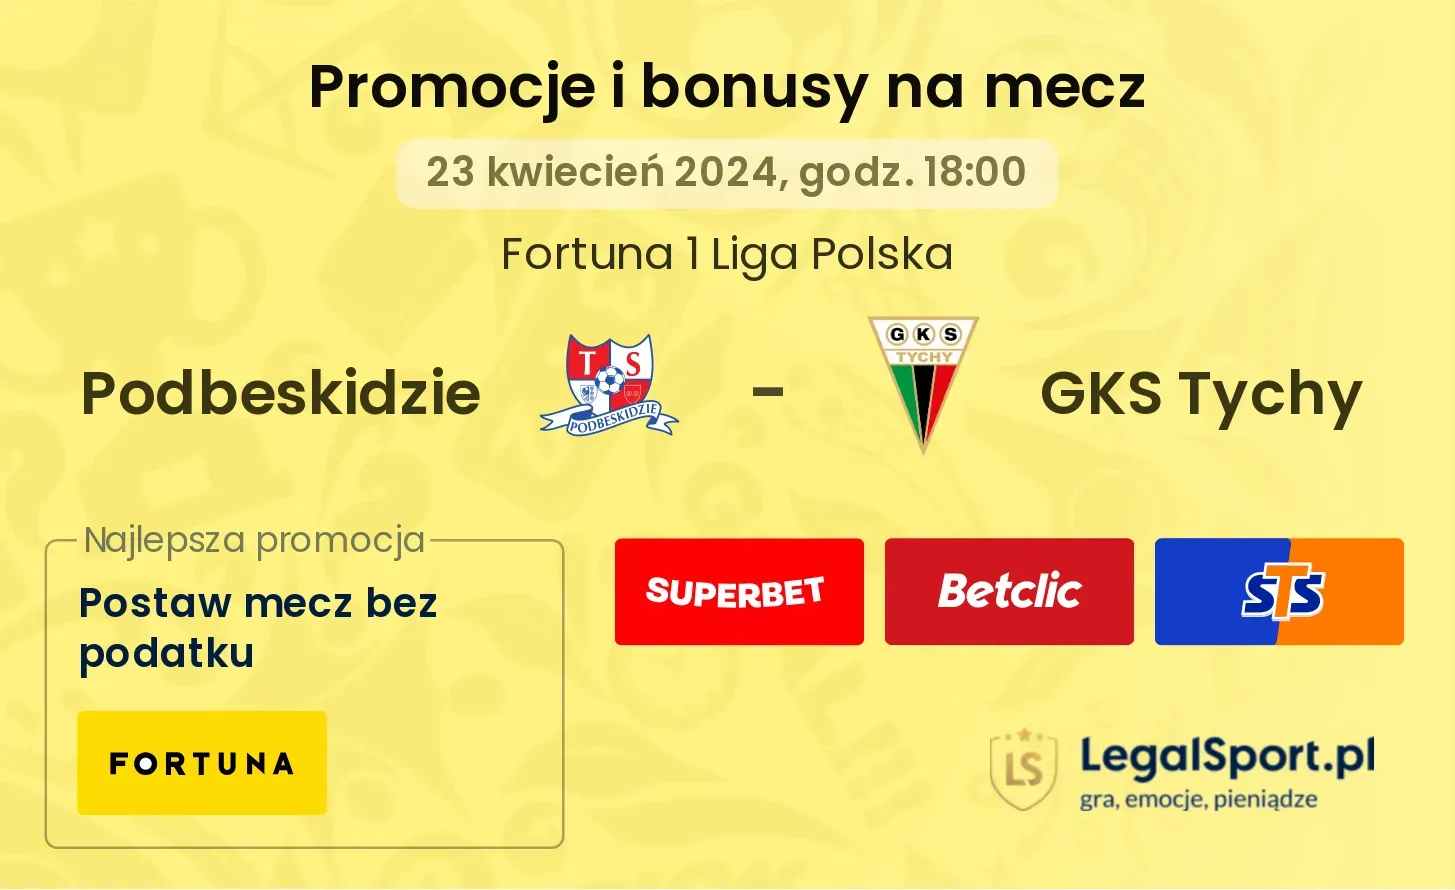 Podbeskidzie - GKS Tychy promocje bonusy na mecz